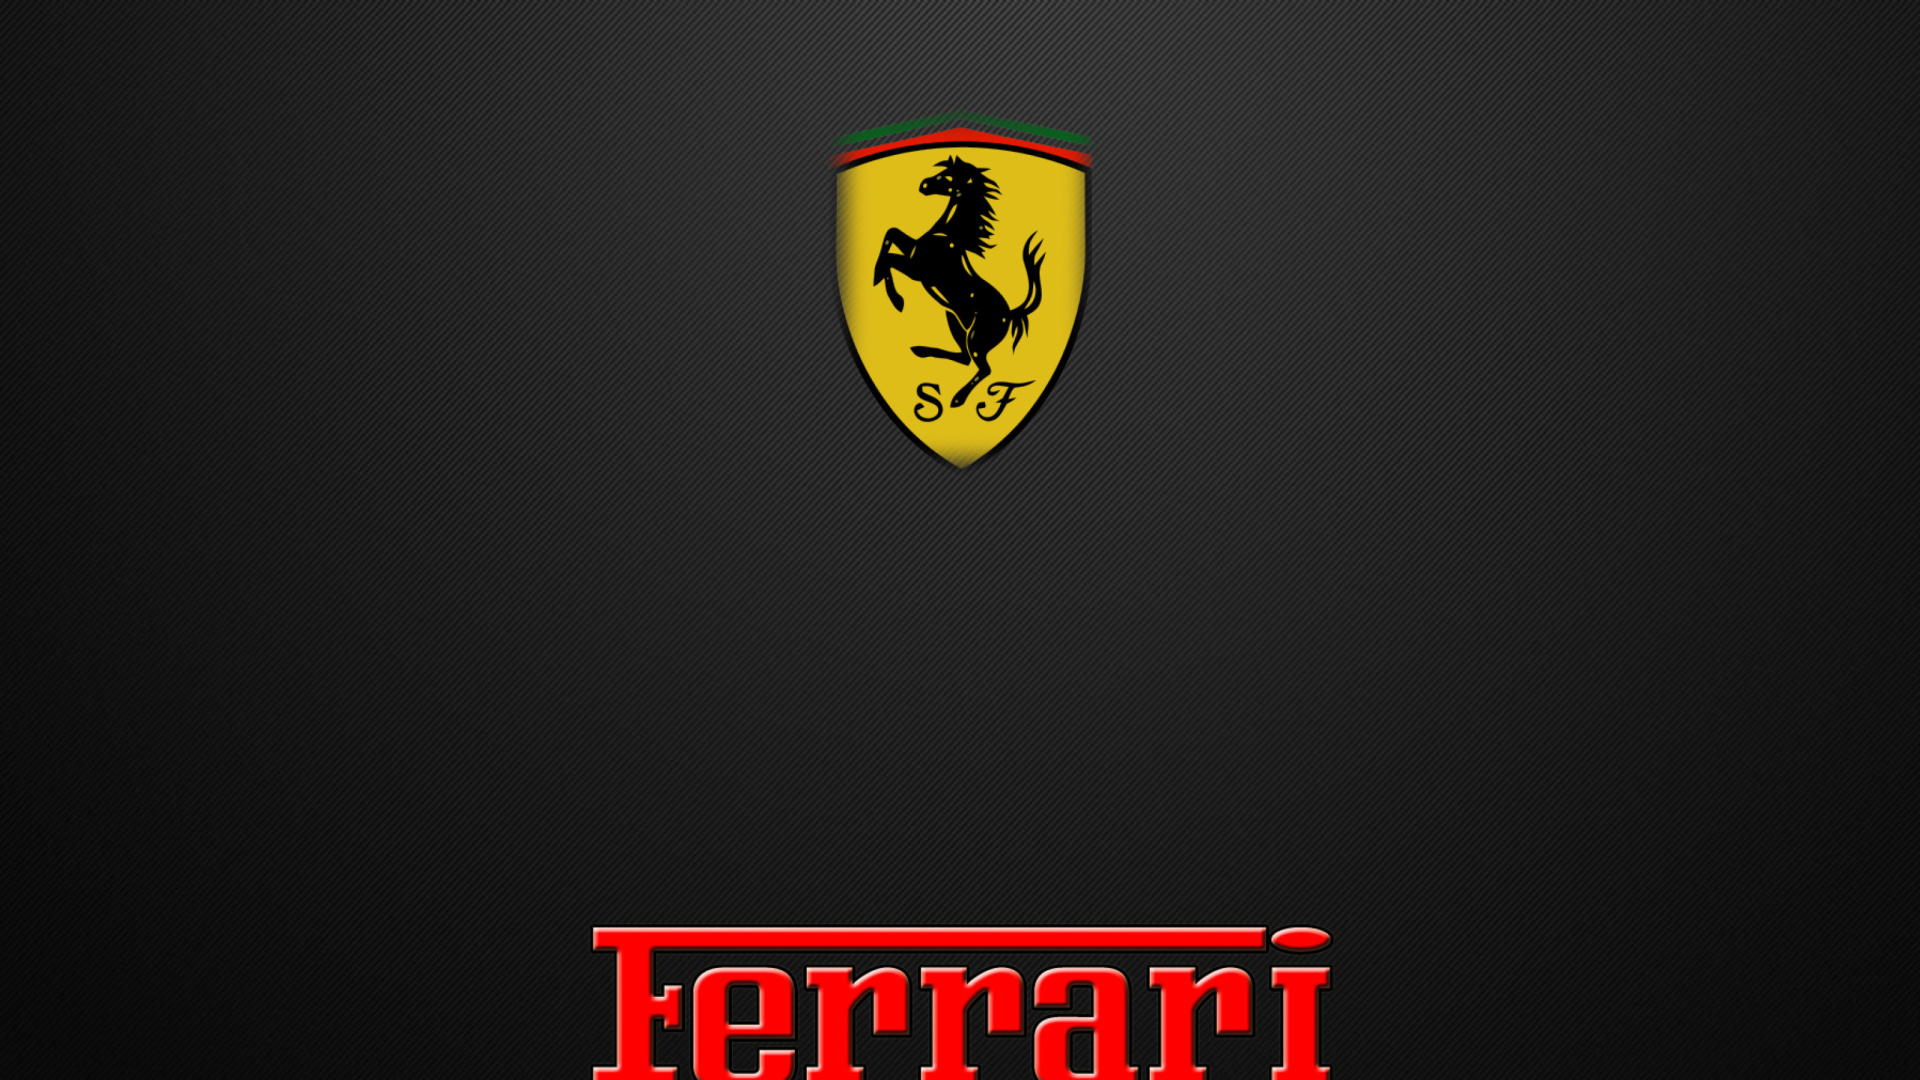 Ferrari Emblem wallpaper 1920x1080